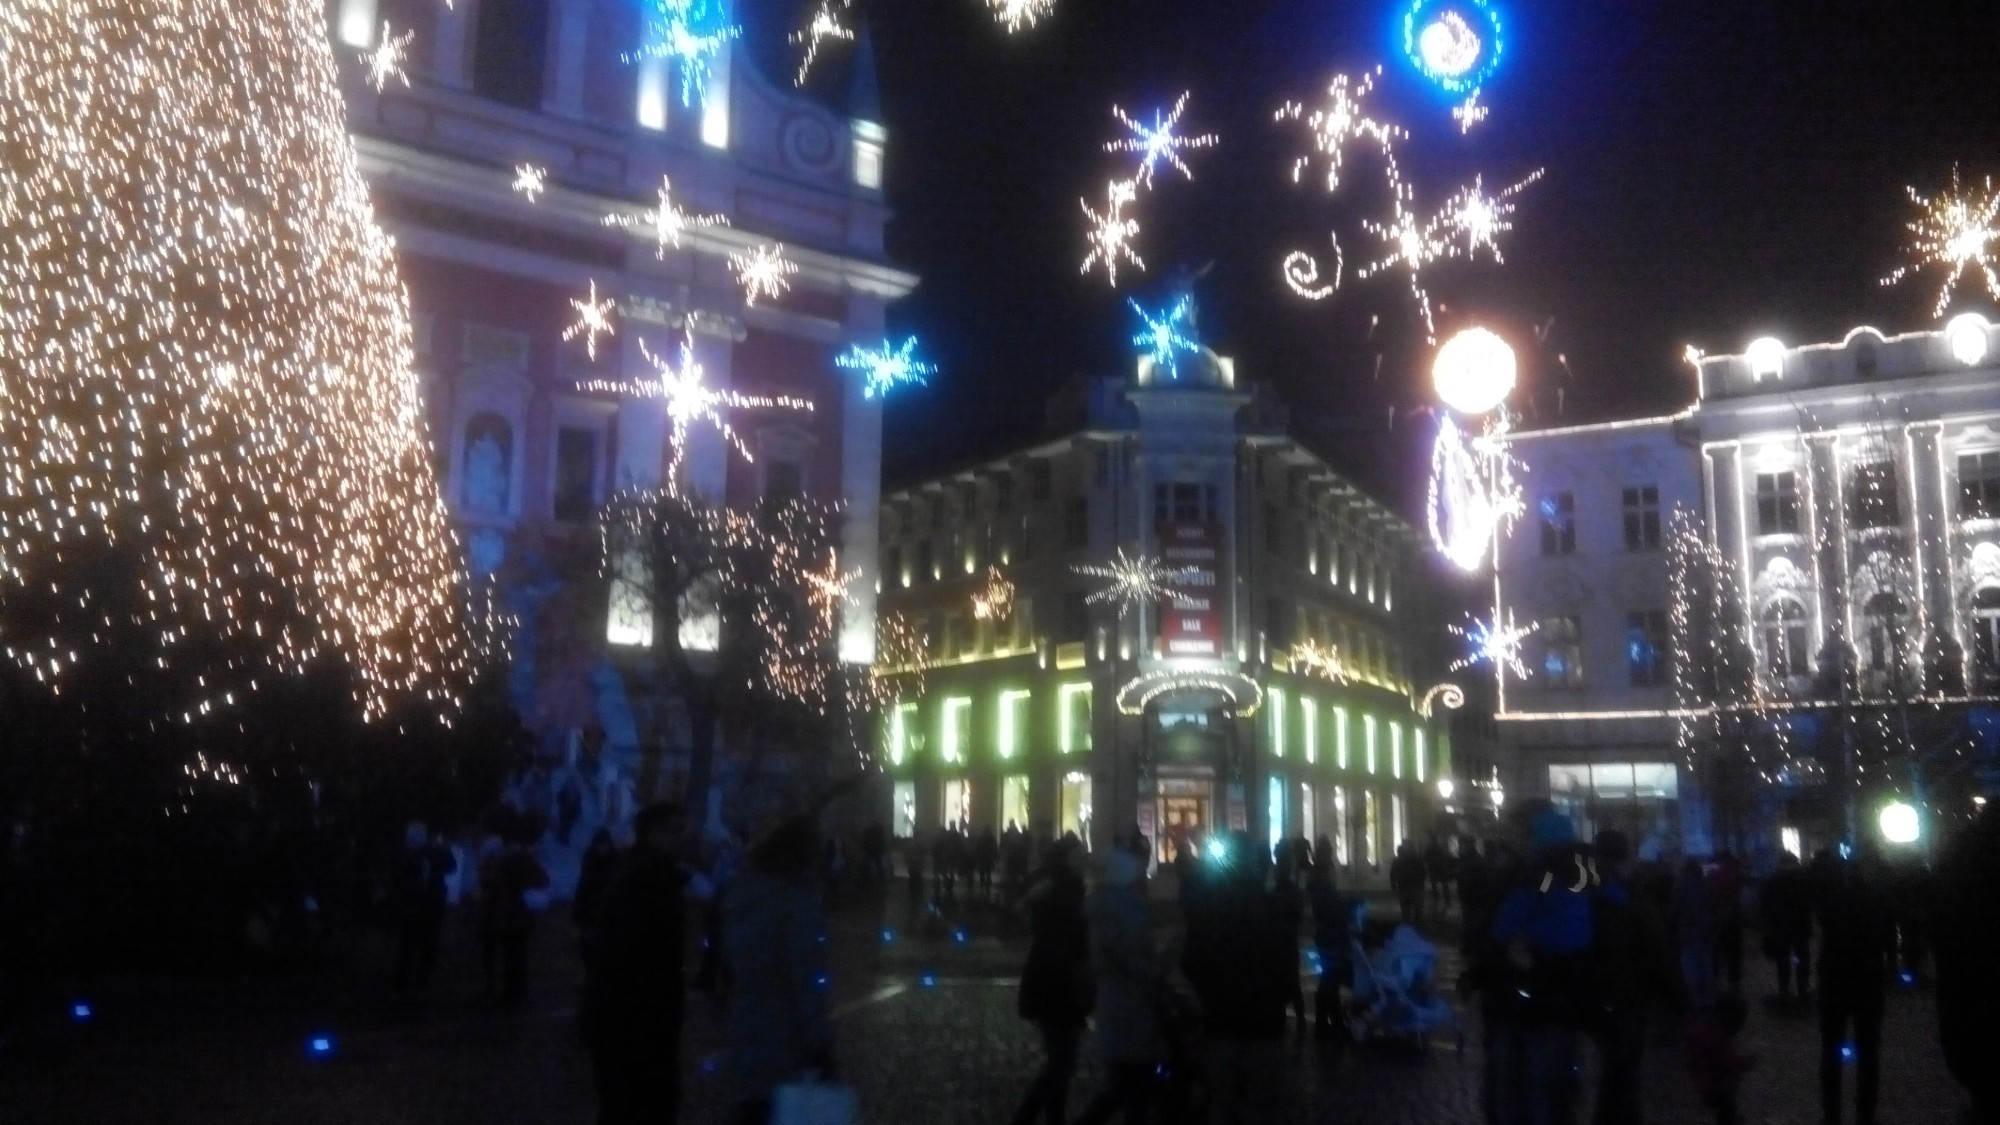 Любляна. Вечерняя иллюминация на площади Прешерна. (02.01.2017)